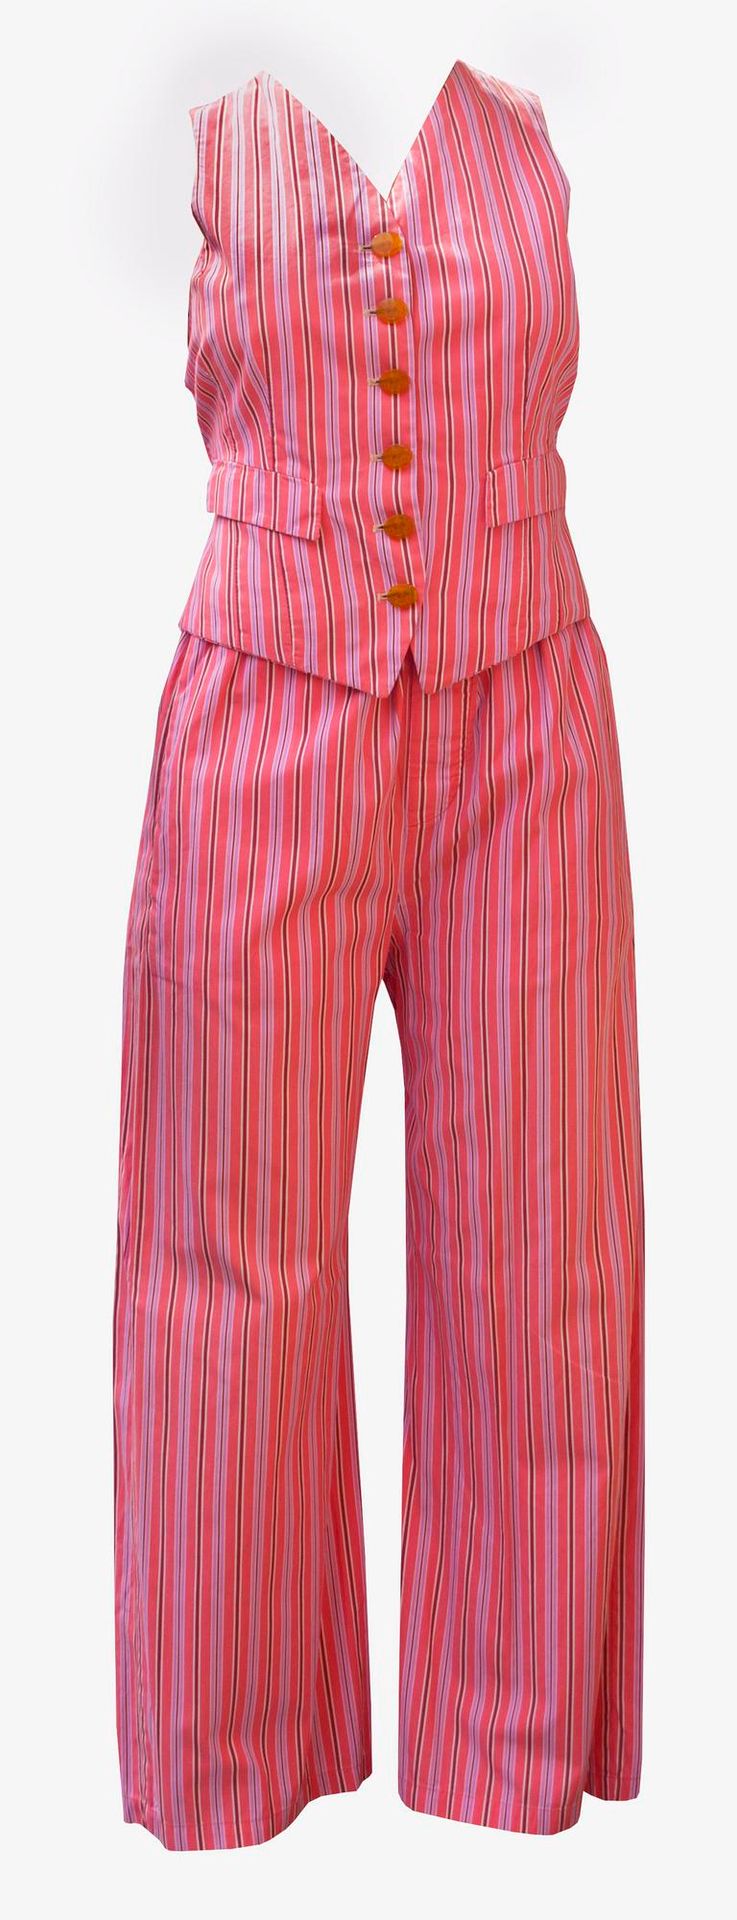 Null 薇薇安-韦斯特伍德

帕加玛斯套装



描述。

条纹棉质睡衣套装。粉红色背景与酒红色和淡紫色线条交替出现。该套装由长裤和马甲组成。90年代初在英国&hellip;